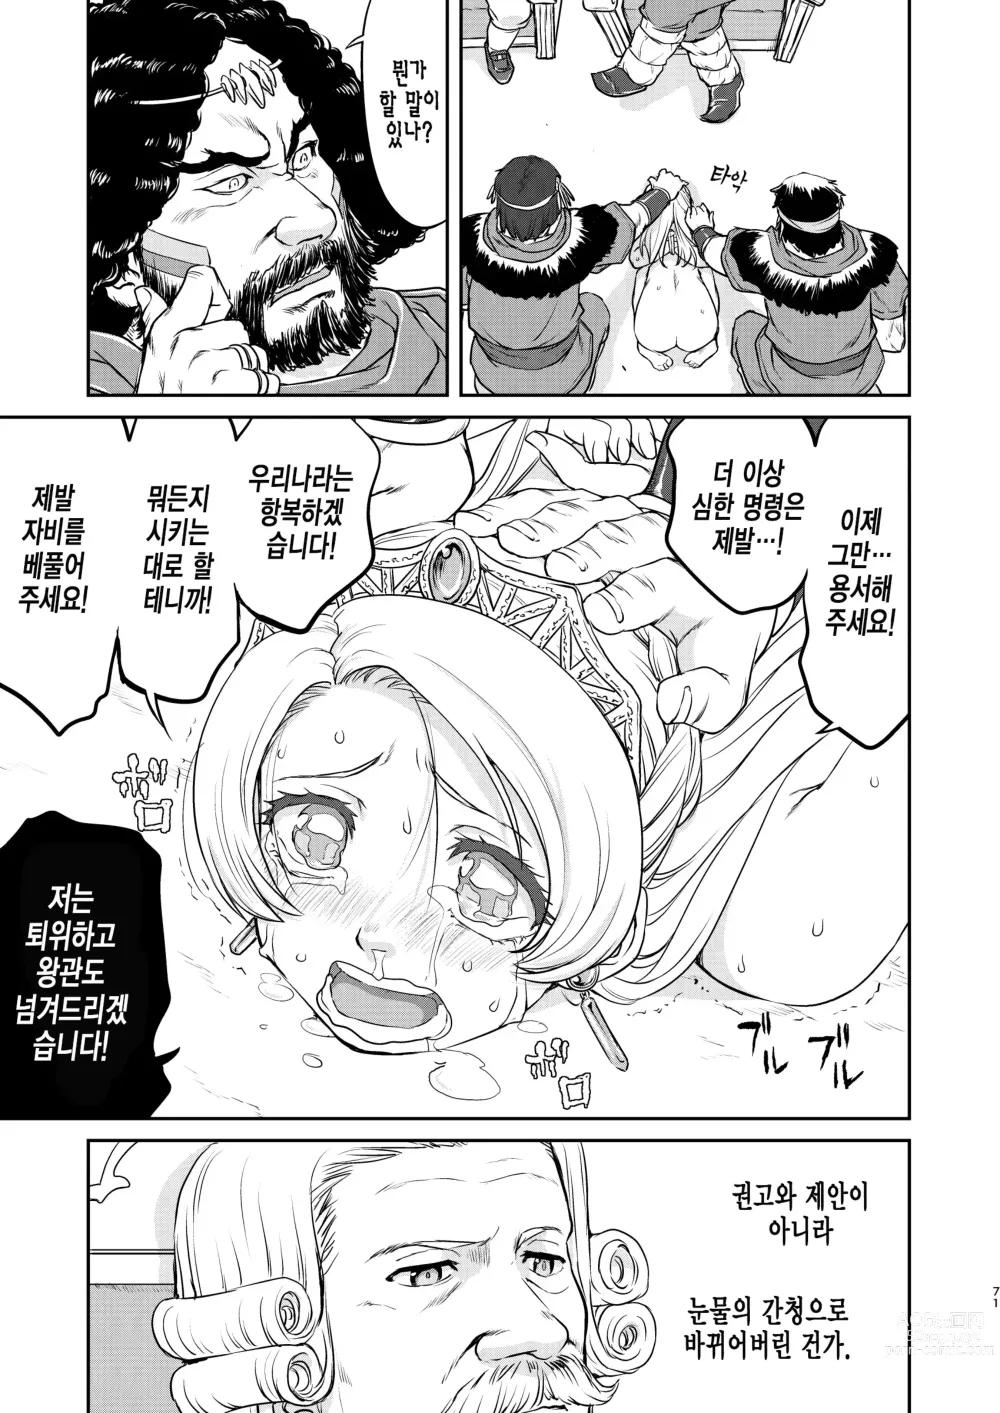 Page 71 of doujinshi 여왕 폐하의 항복 점령편